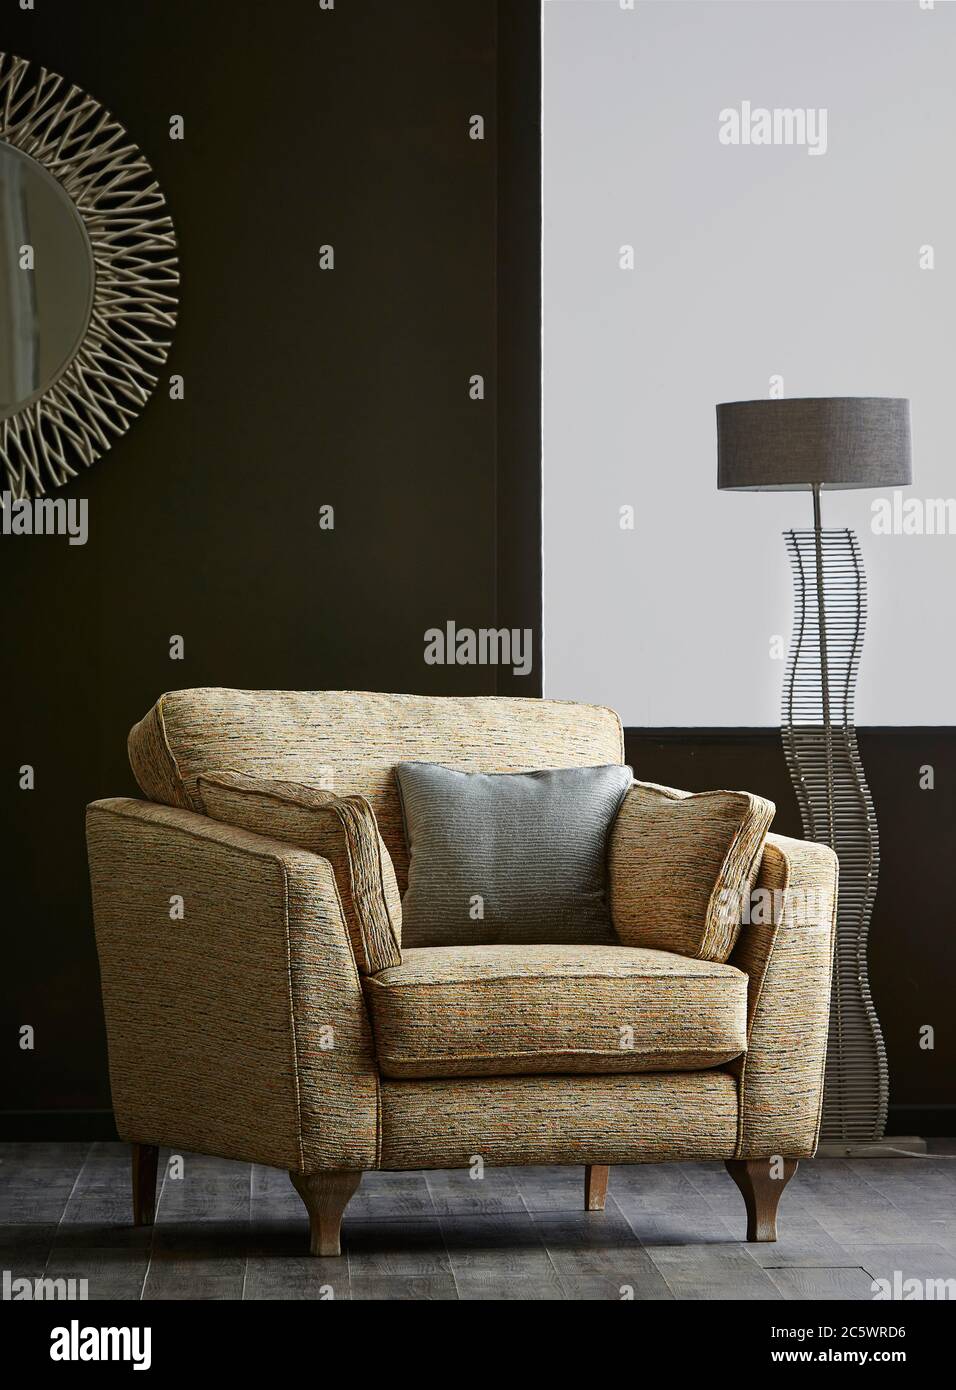 Aufnahme eines bequemen Sessels mit Kissen im Wohnzimmer Stockfoto